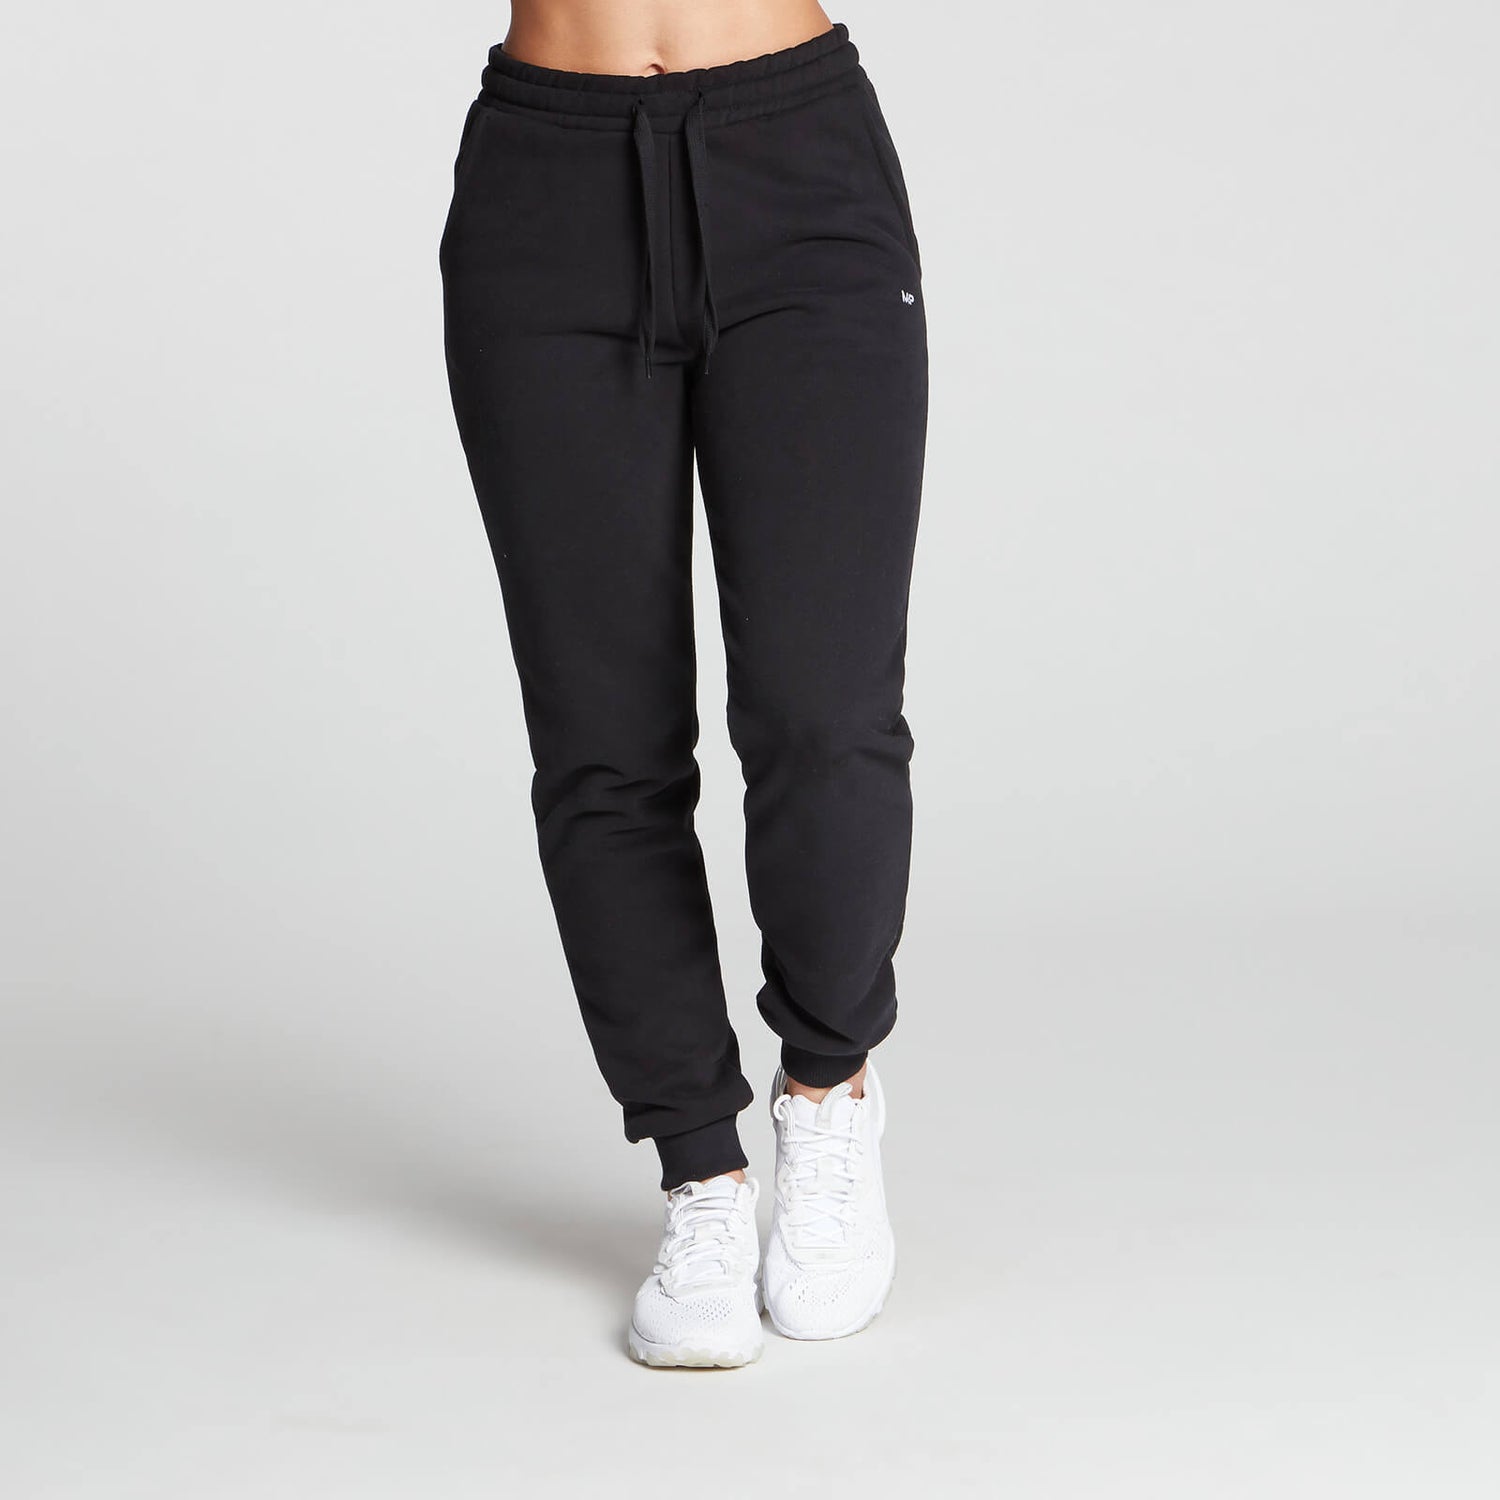 Pantaloni jogger MP Essentials pentru femei - Negru - XS